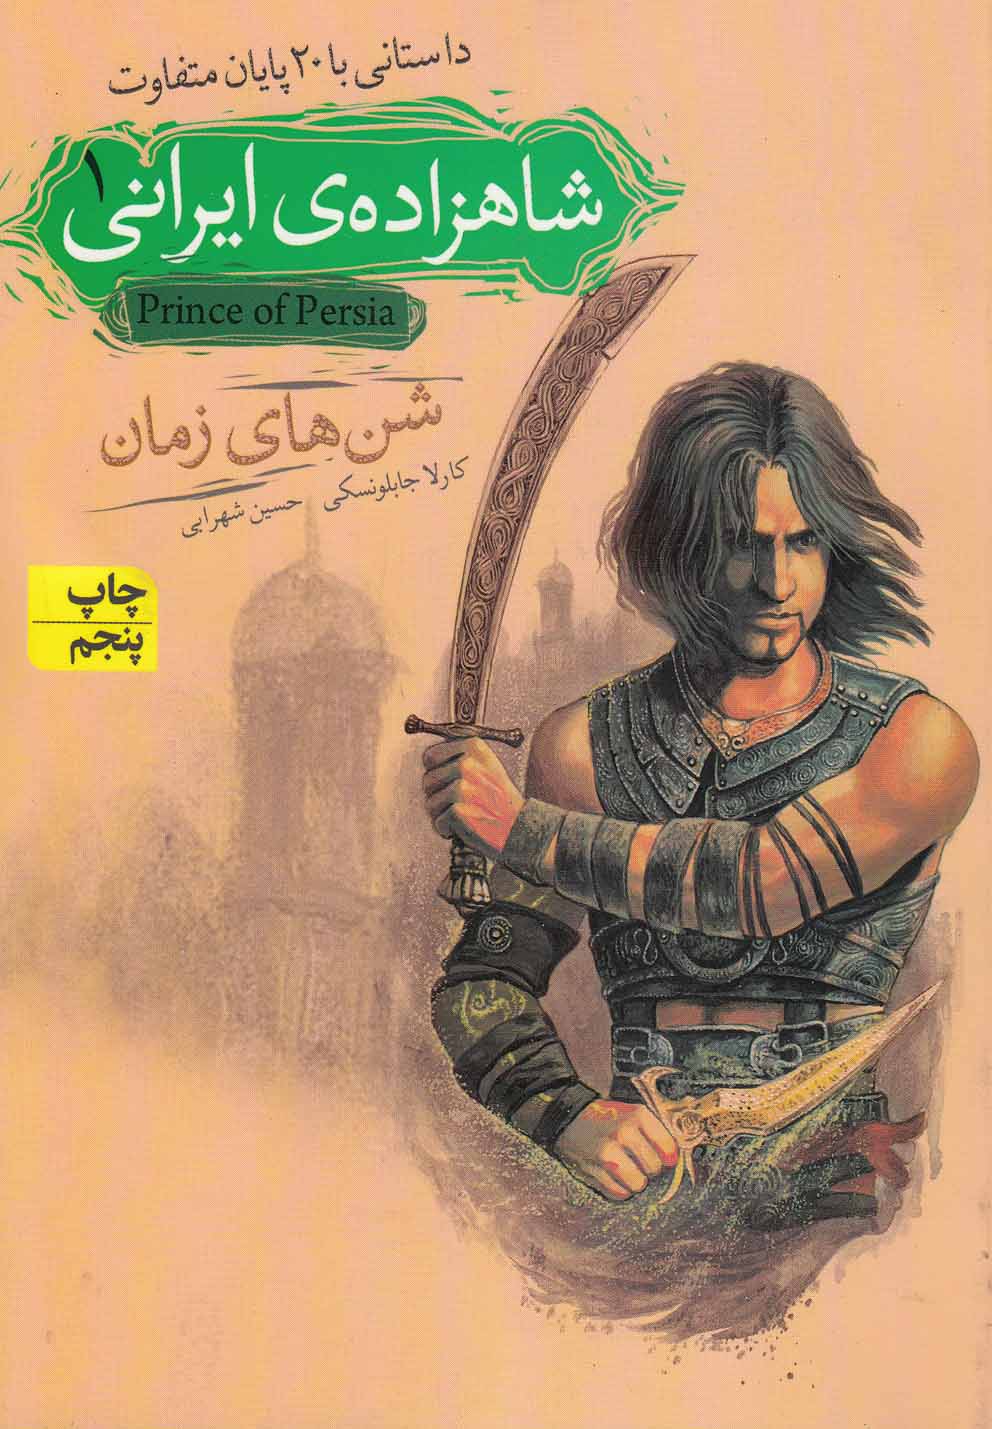 * رمان نوجوان 77: شاهزاده ایرانی 1: شن های زمان